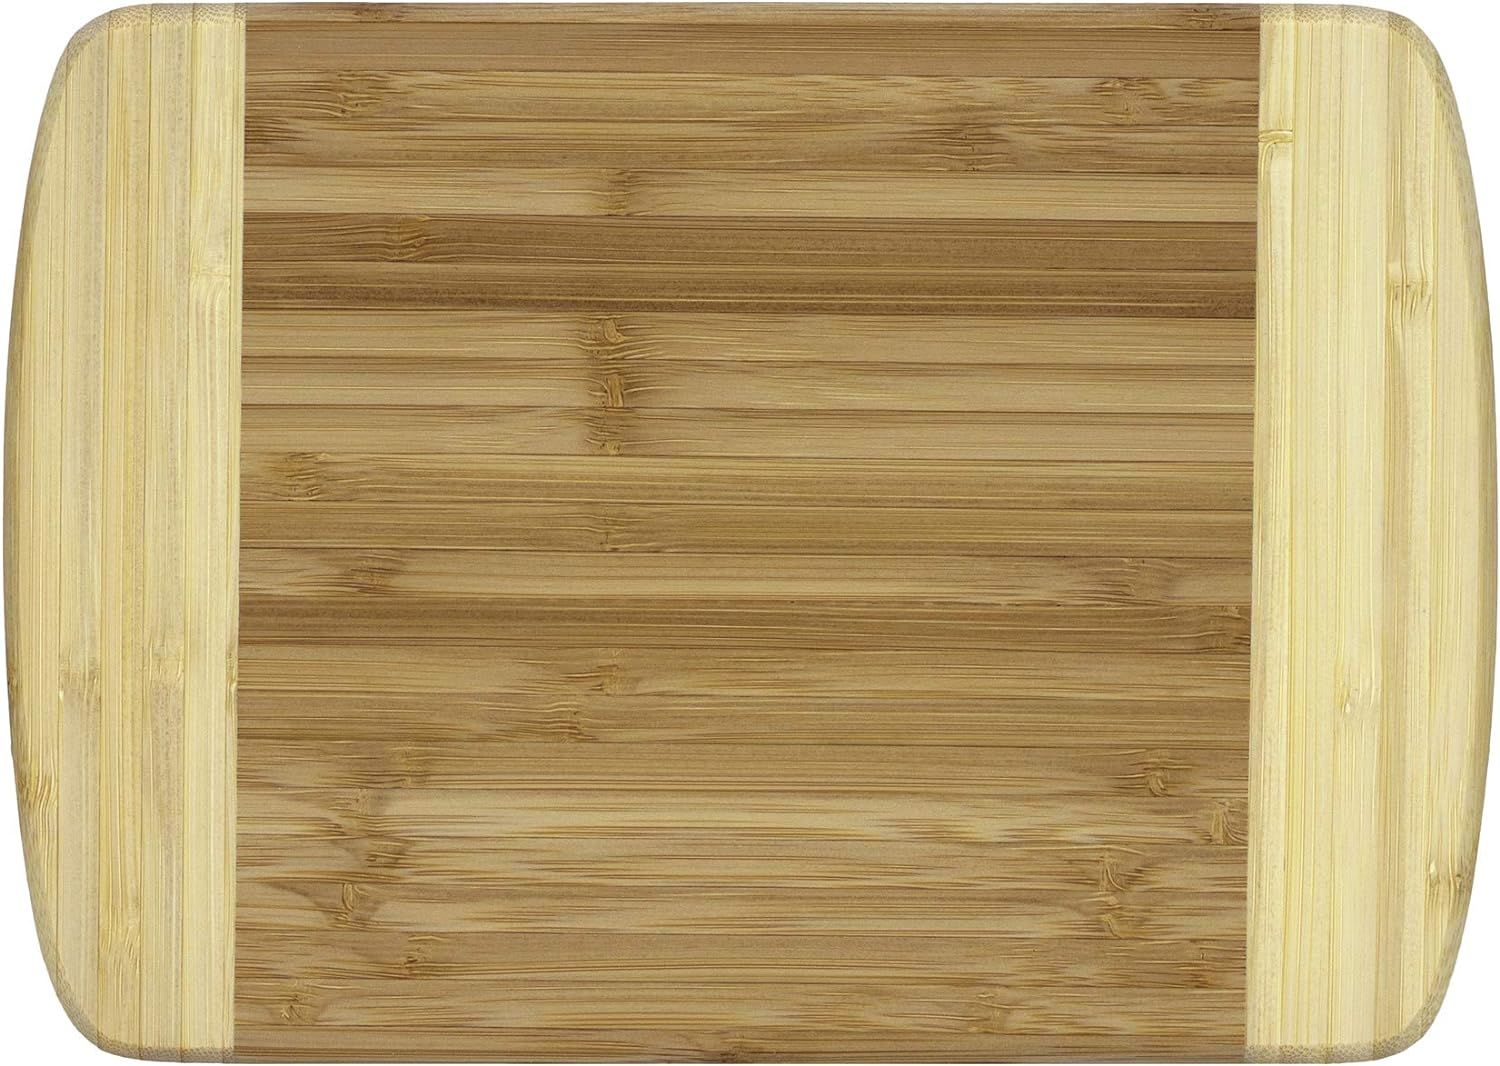 Totally Bamboo Hana Bamboo Serving & Cutting Board, 10" x 7-1/8", Hana-10 x 7 1/4" | Amazon (US)